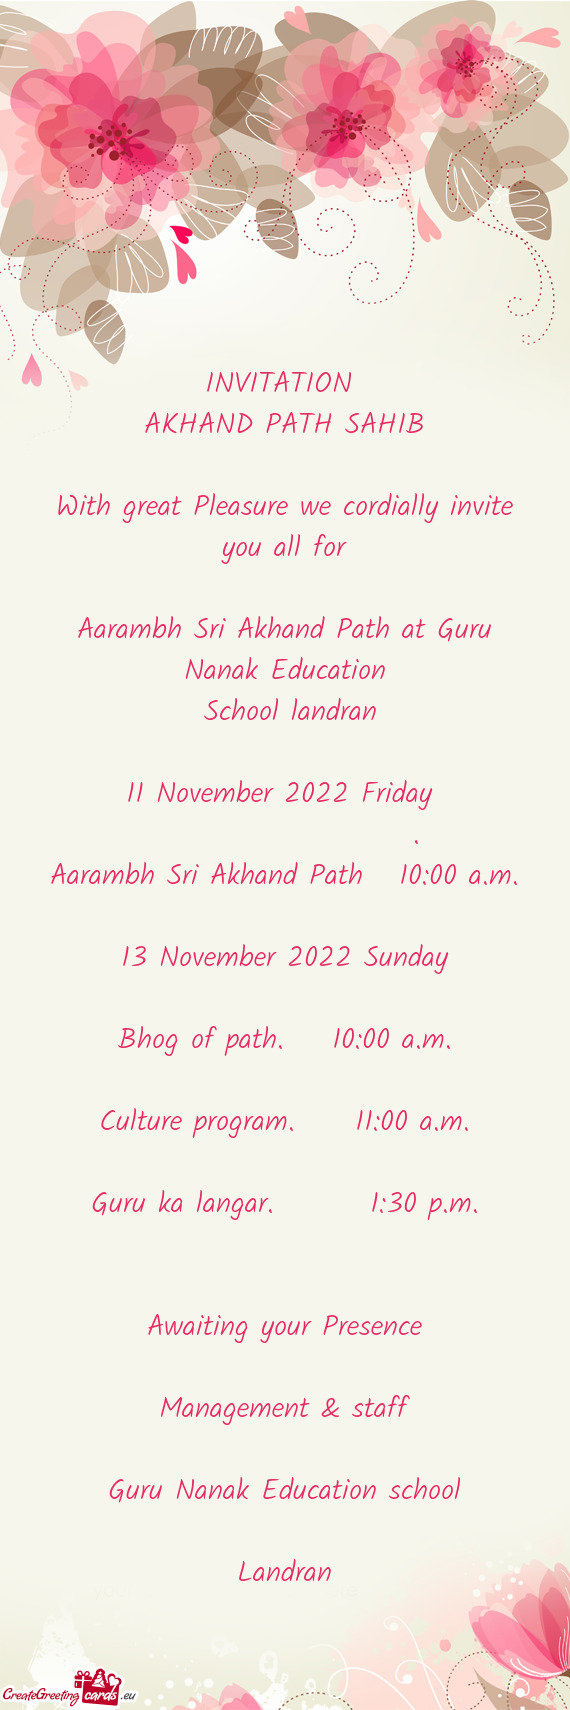 Aarambh Sri Akhand Path at Guru Nanak Education